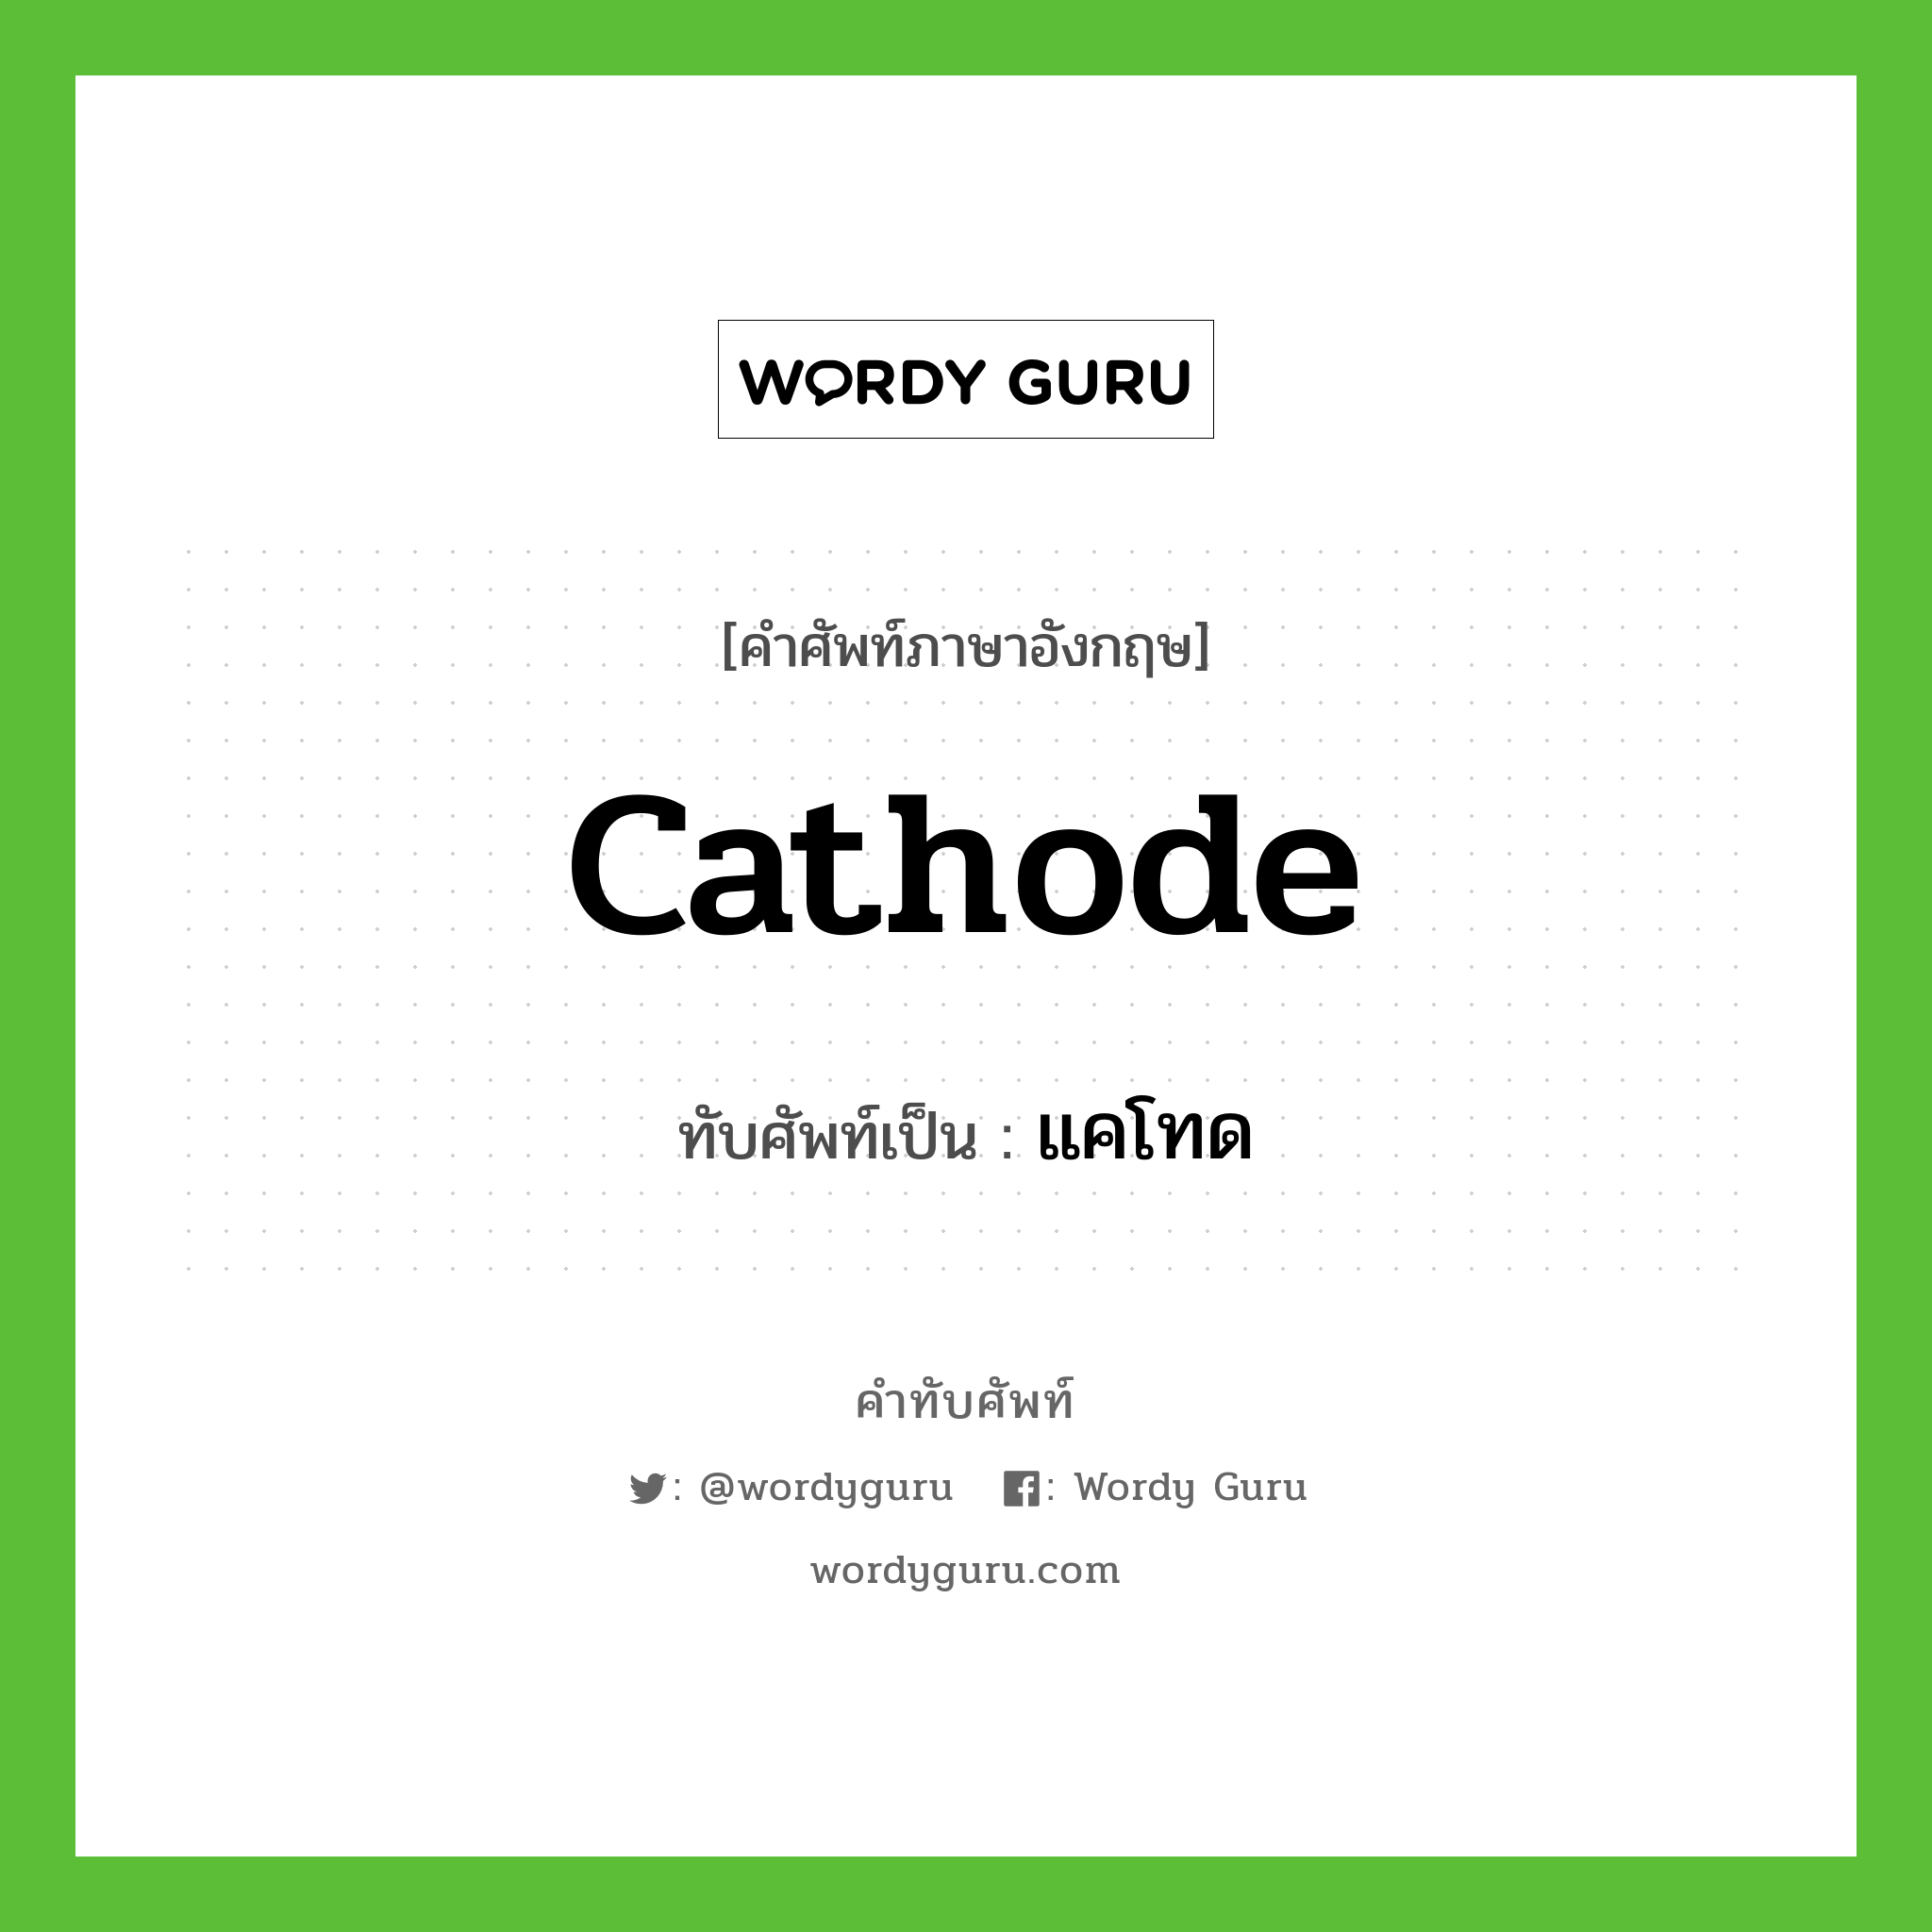 cathode เขียนเป็นคำไทยว่าอะไร?, คำศัพท์ภาษาอังกฤษ cathode ทับศัพท์เป็น แคโทด